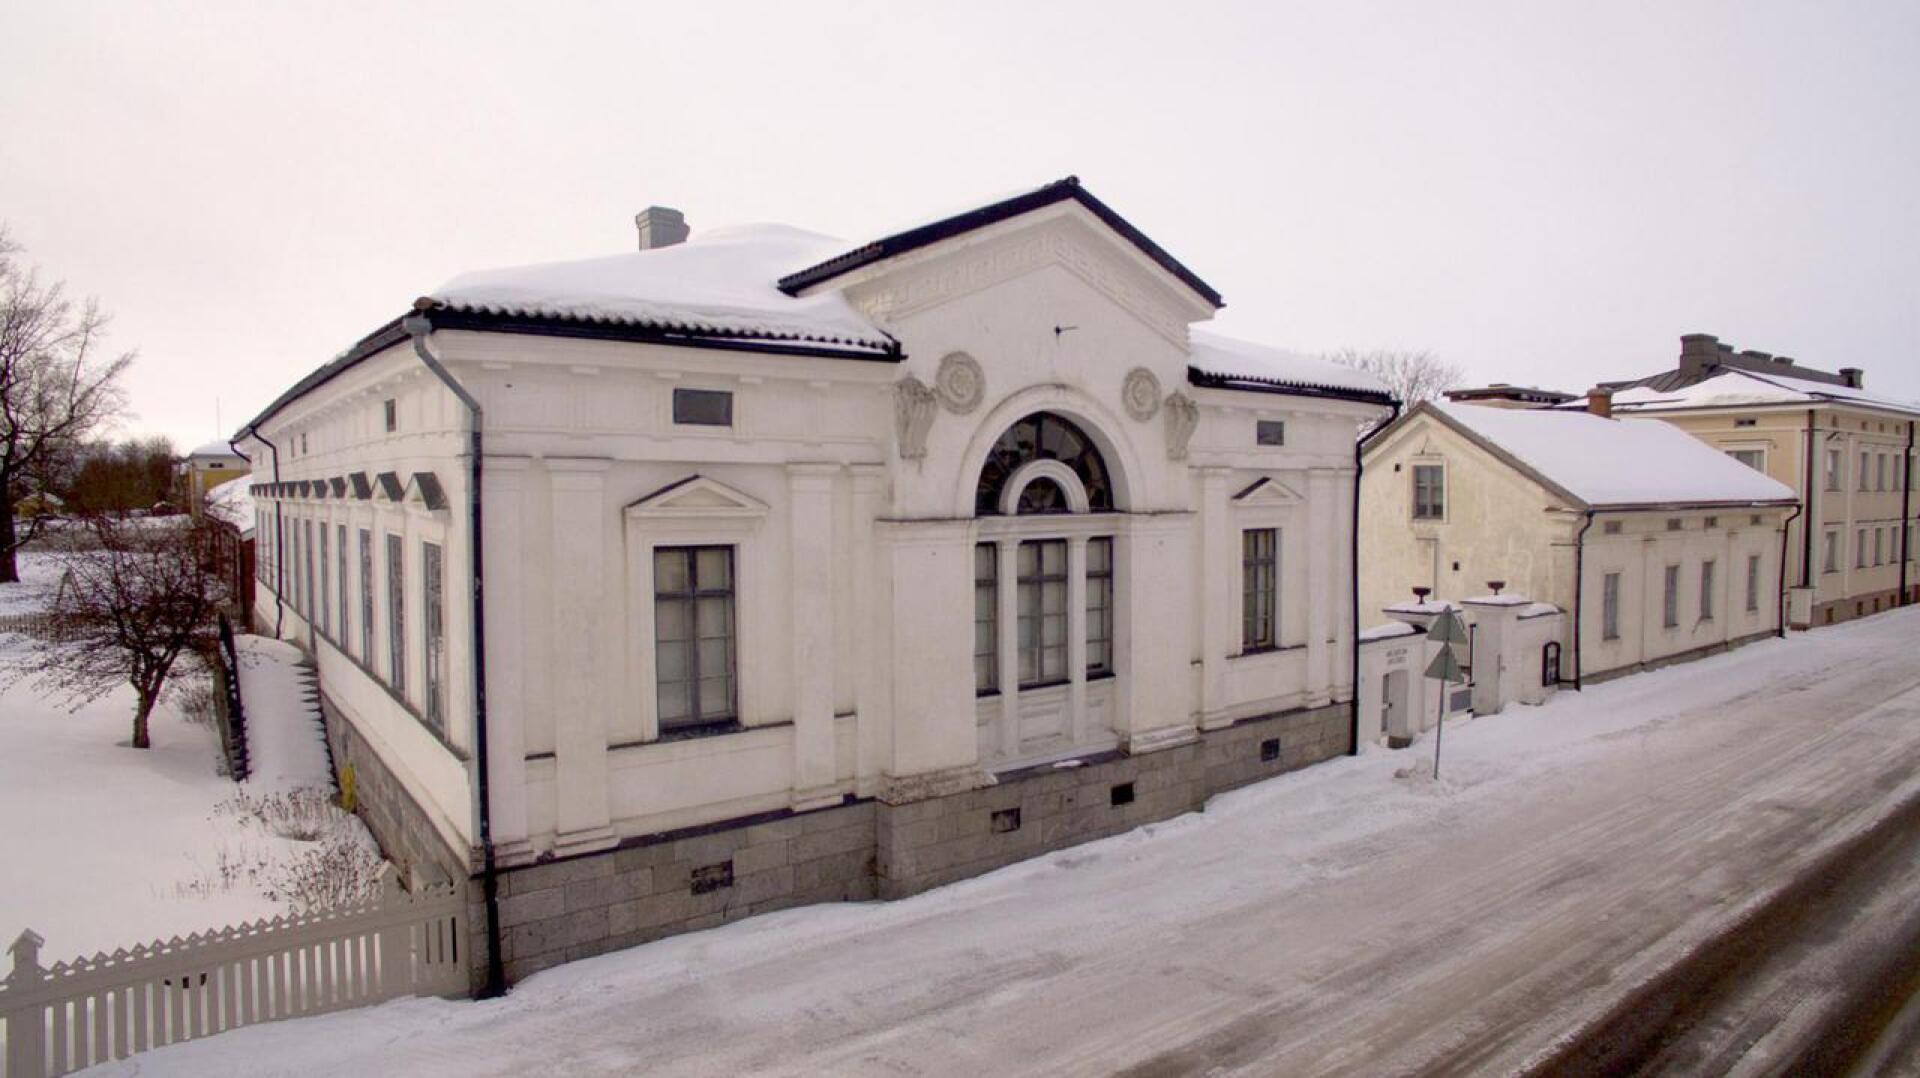 Malmin talo on Pietarsaaren museon keskeisin näyttelytila. Koska maalaiskuntaa ei enää ole, Pietarsaaren museon ei tarvitse alleviivata kaupunkilaisuuttaan.